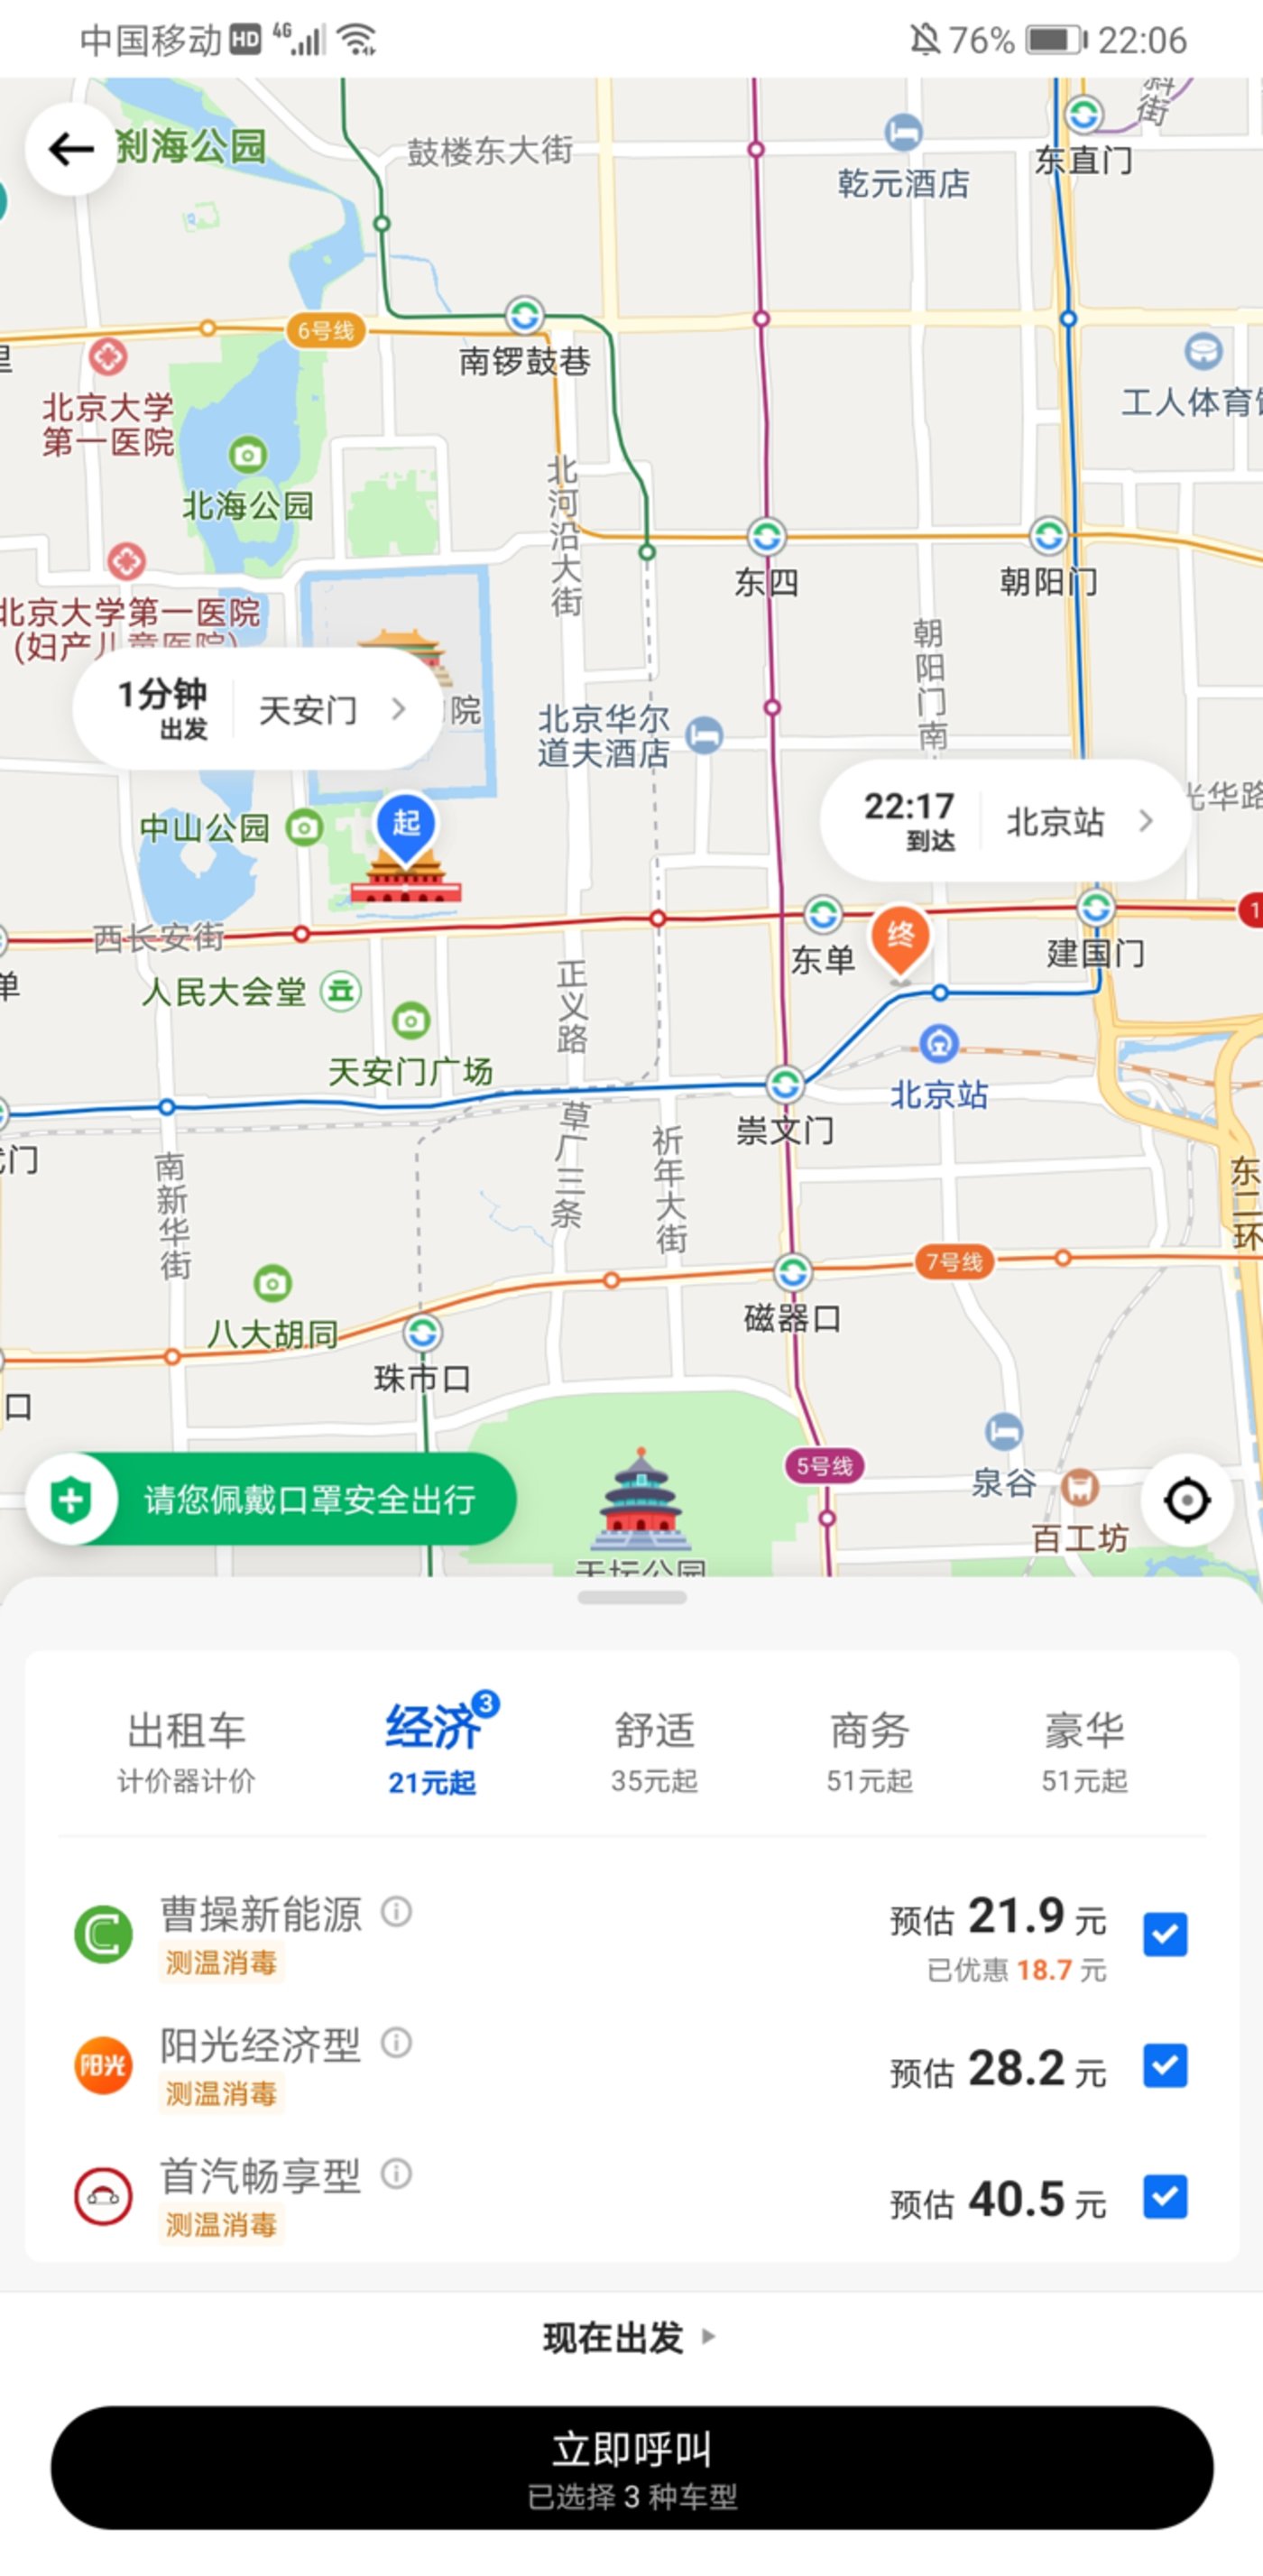 美团App打车服务页面（北京地区）